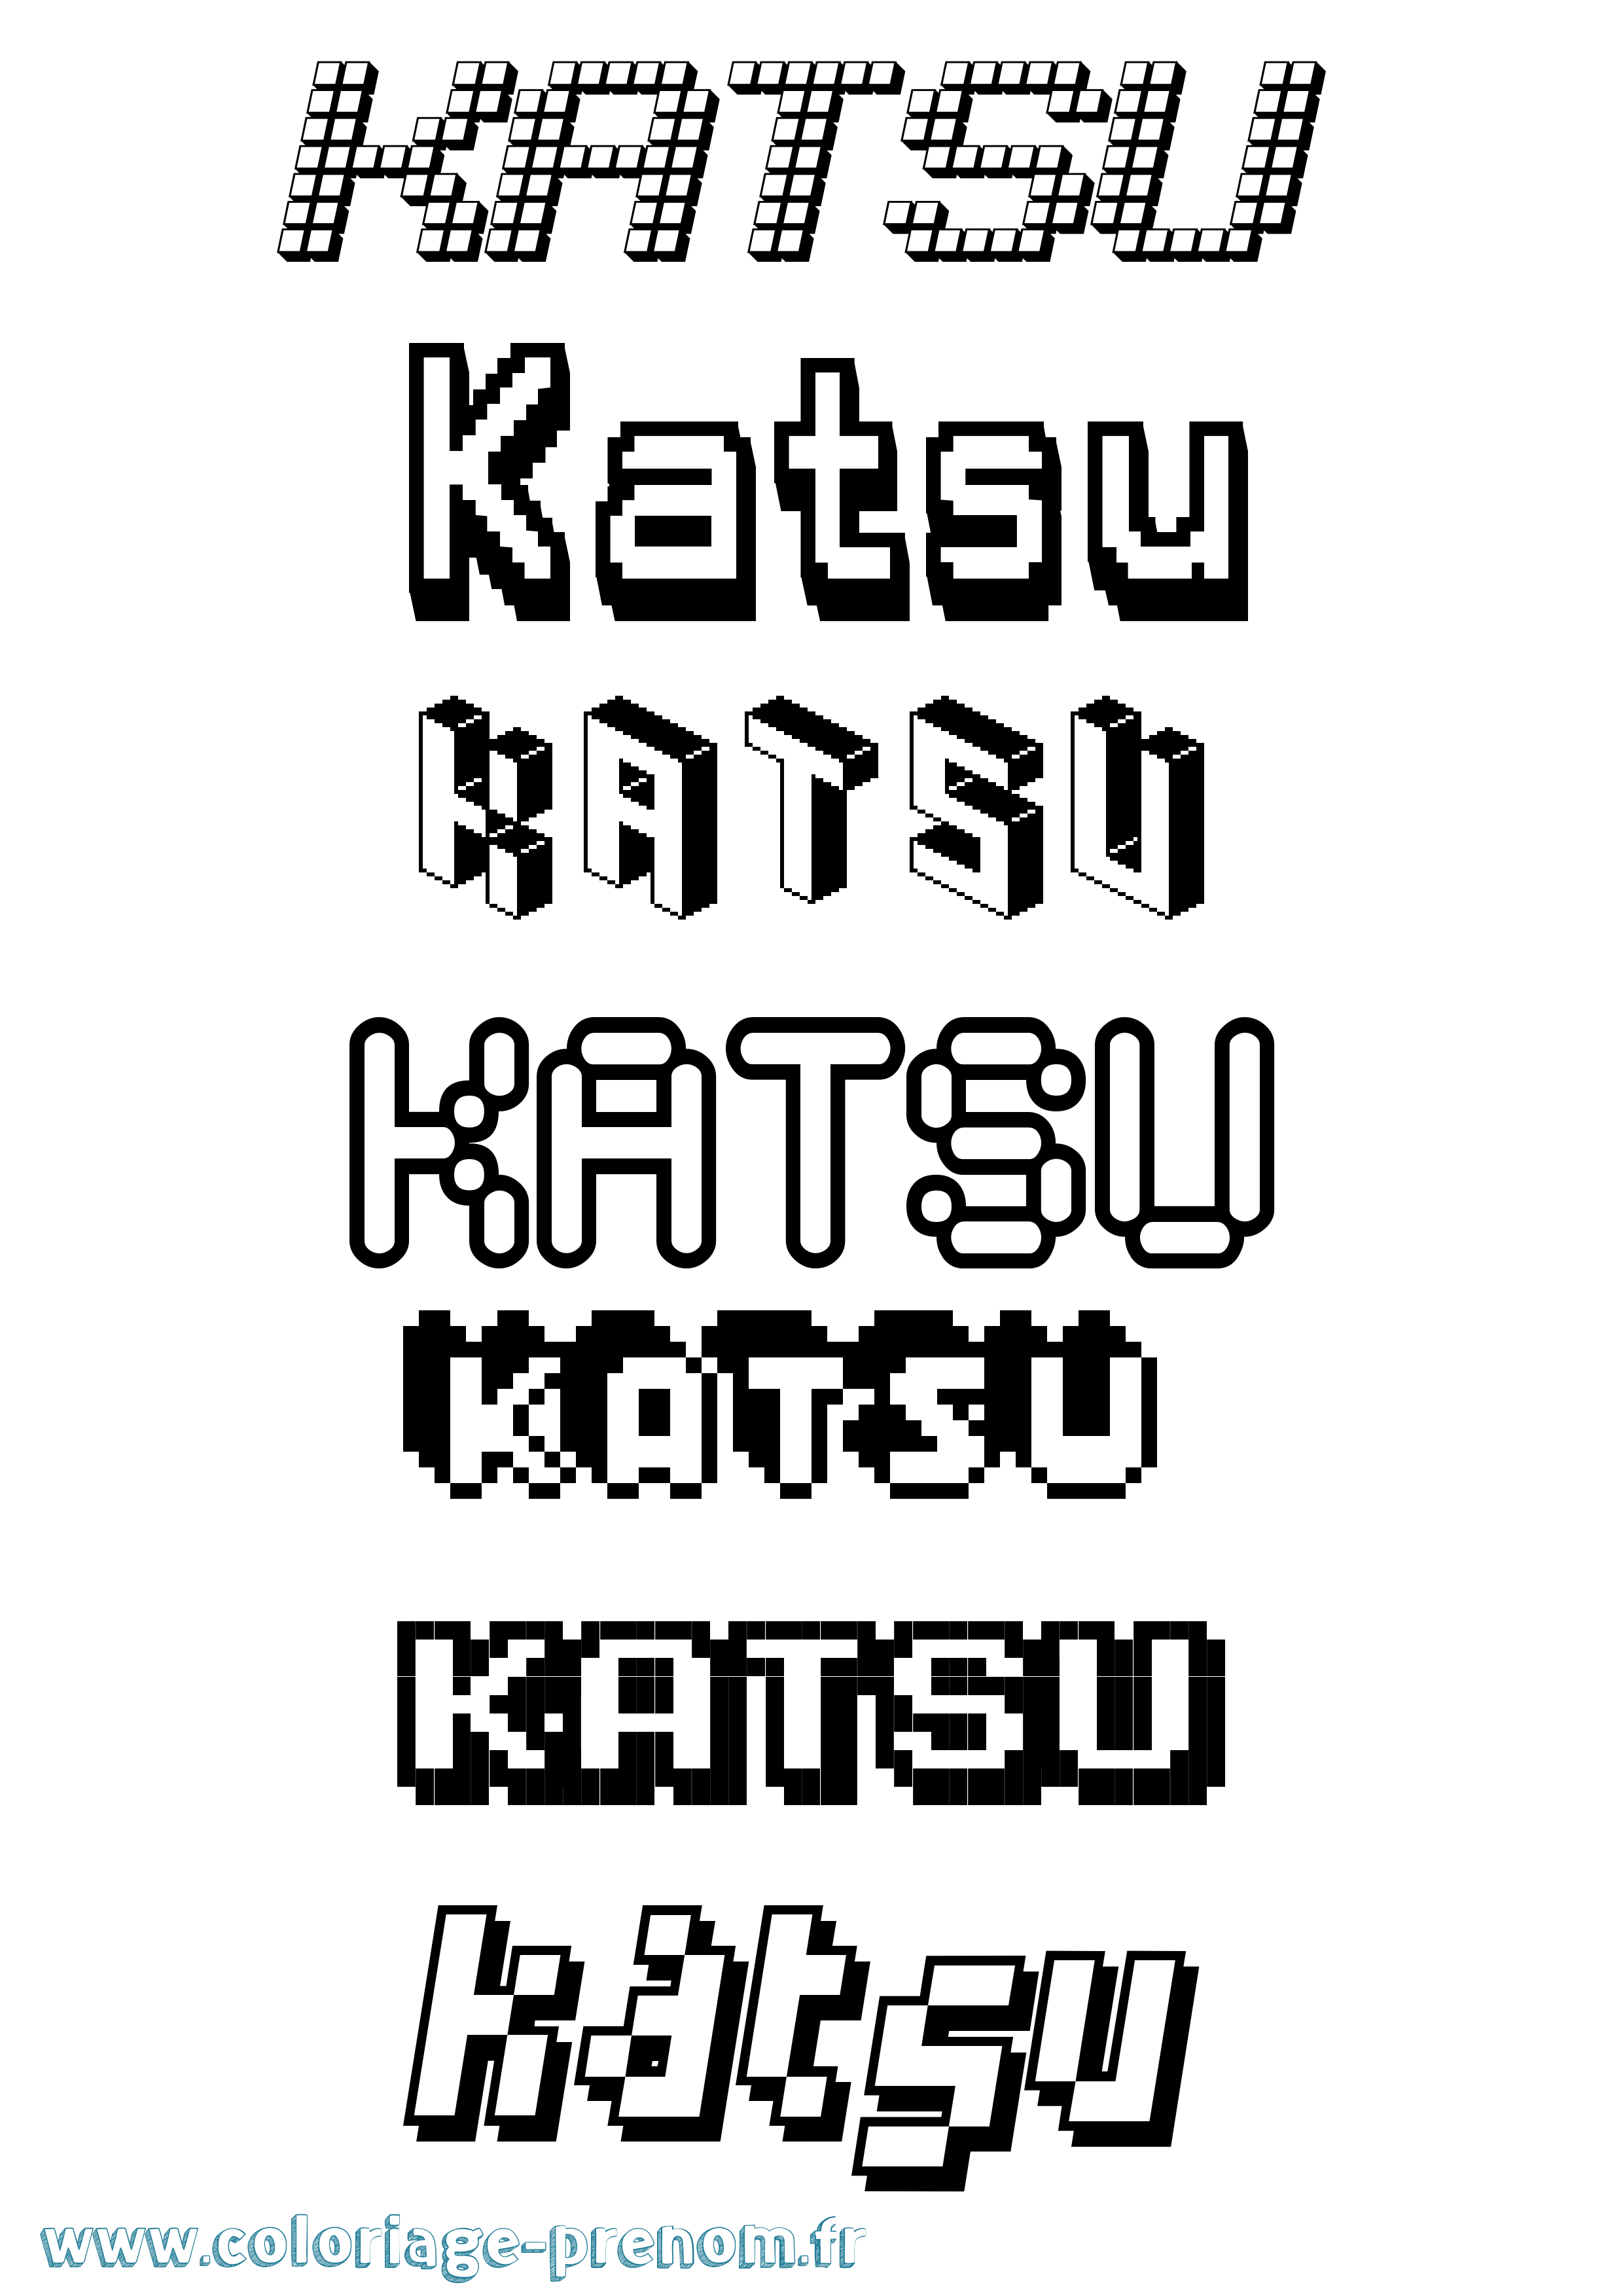 Coloriage prénom Katsu Pixel